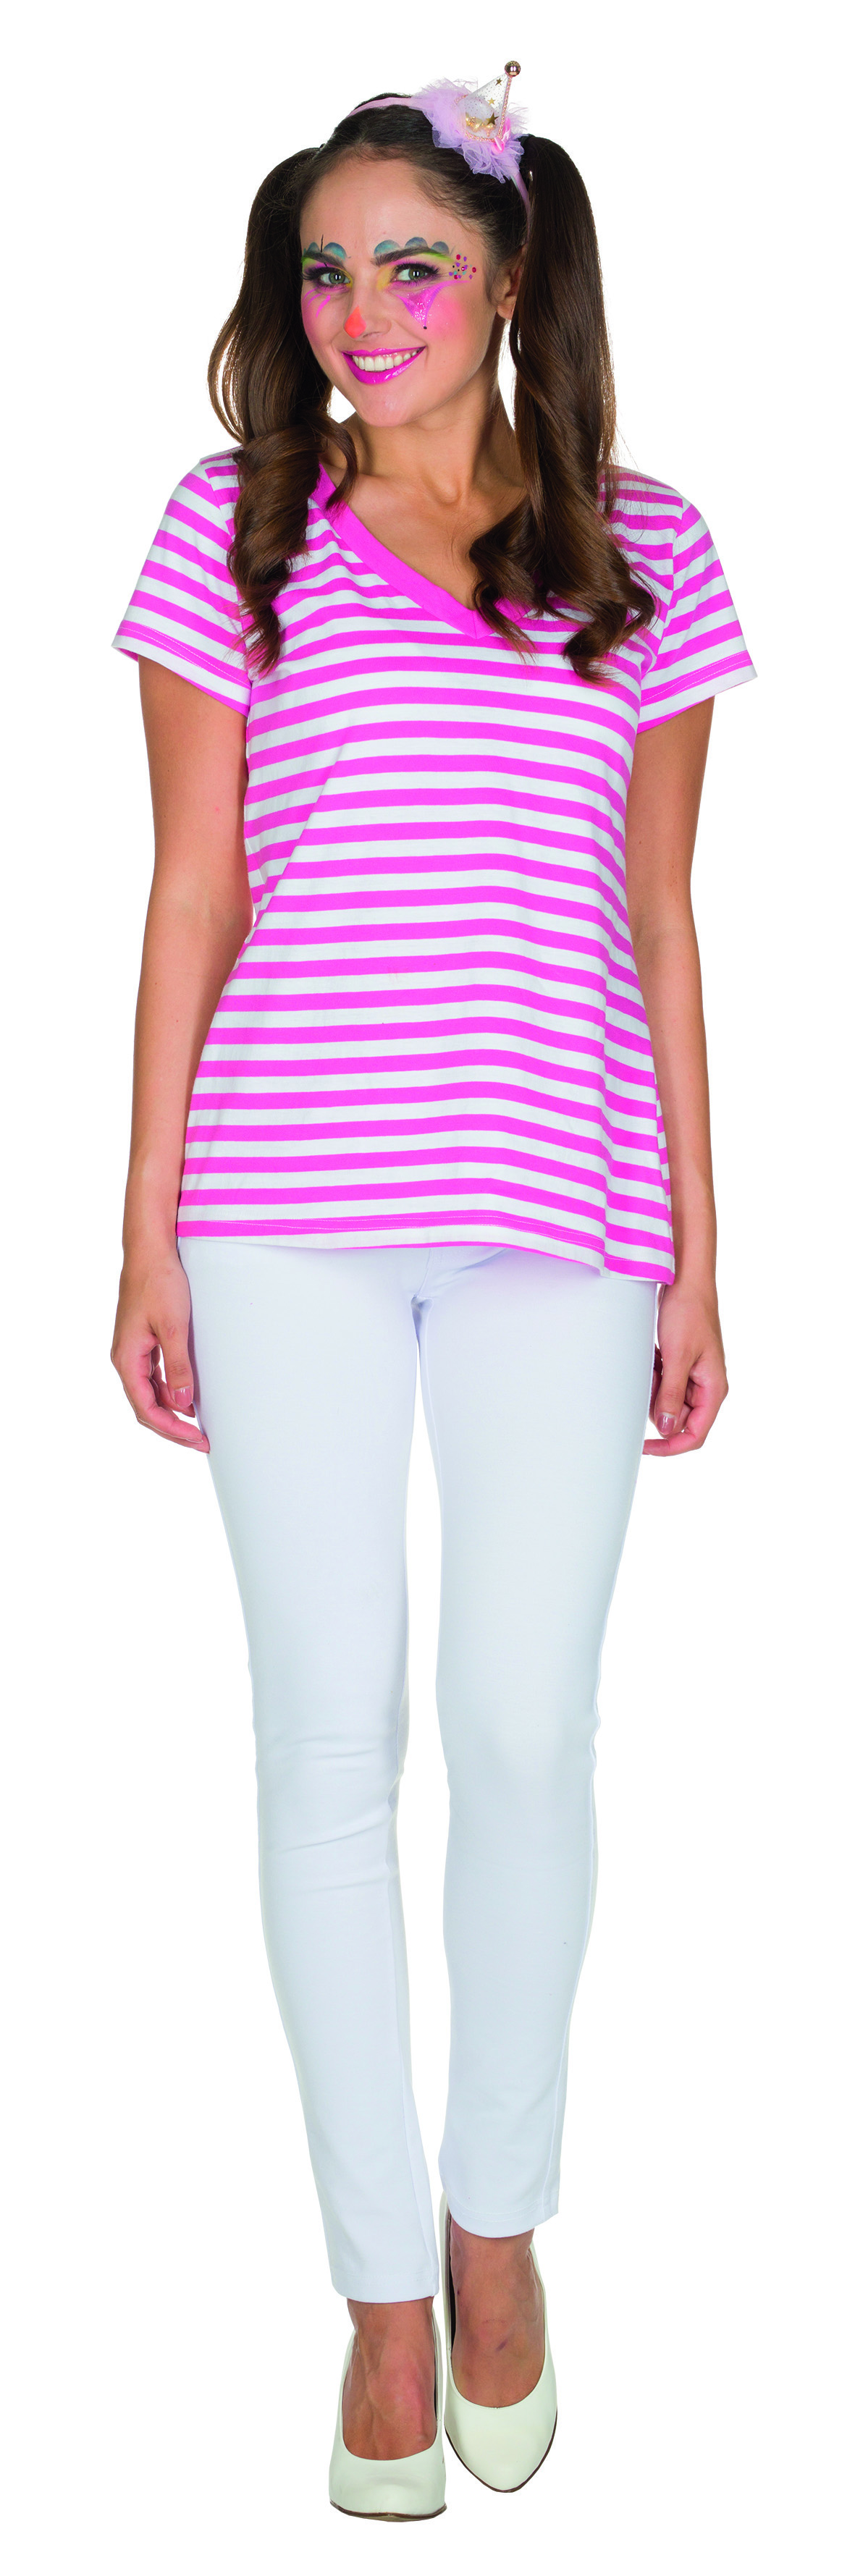 PxP 13345 - Ringel V-Shirt gestreift/geringelt - pink/weiß, 100% Baumwolle, Gr. 34/36 - 46/48